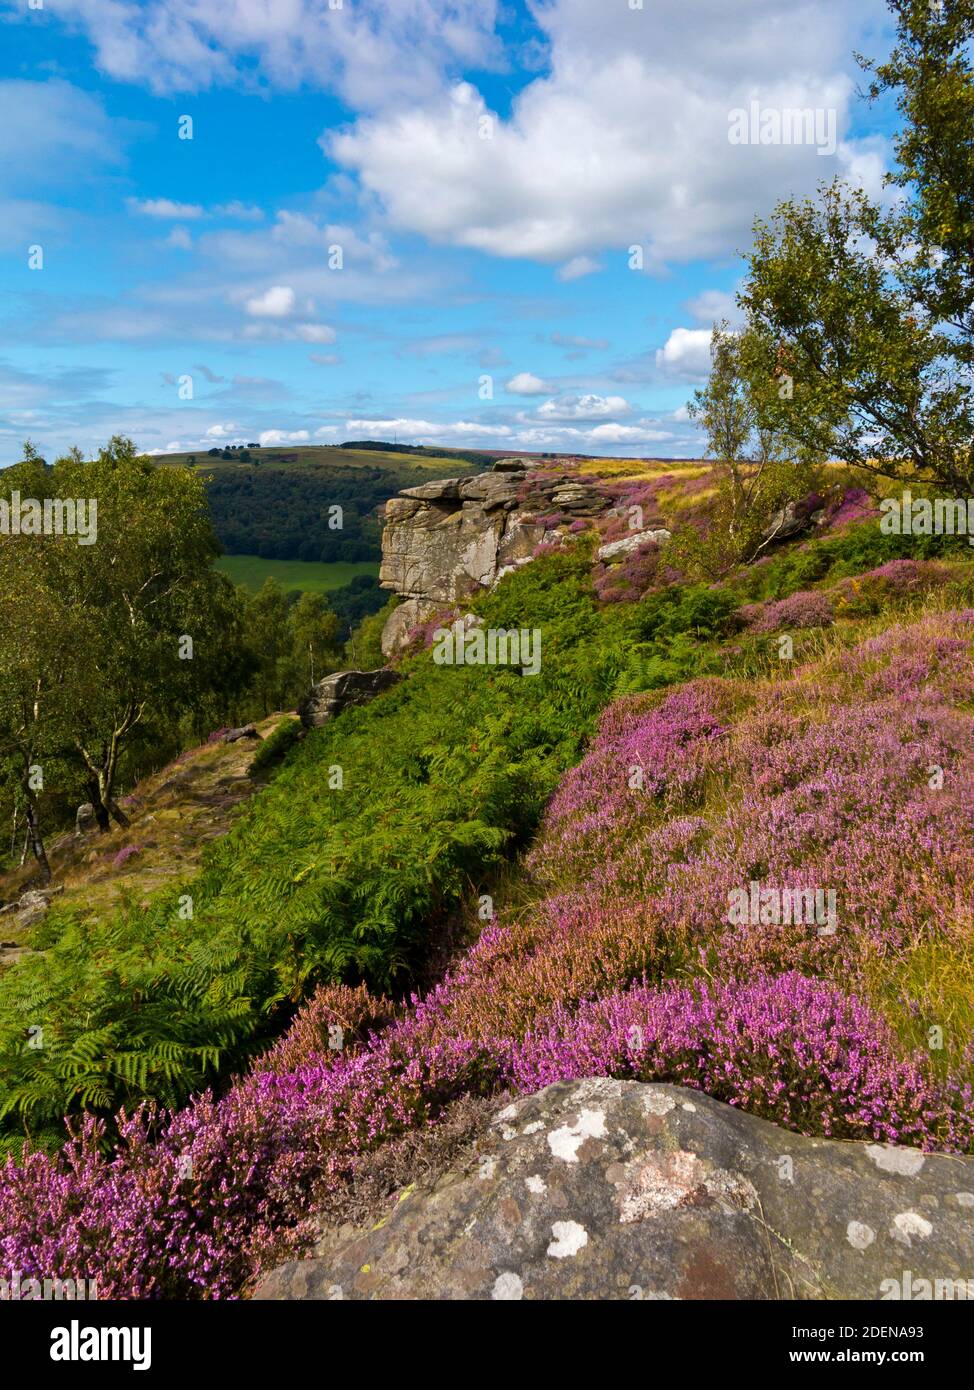 La bruyère de la fin de l'été sur Froggatt Edge un escarpement de pierre à aiguiser dans la région de Dark Peak du parc national de Peak District, à Derbyshire, Angleterre Royaume-Uni Banque D'Images